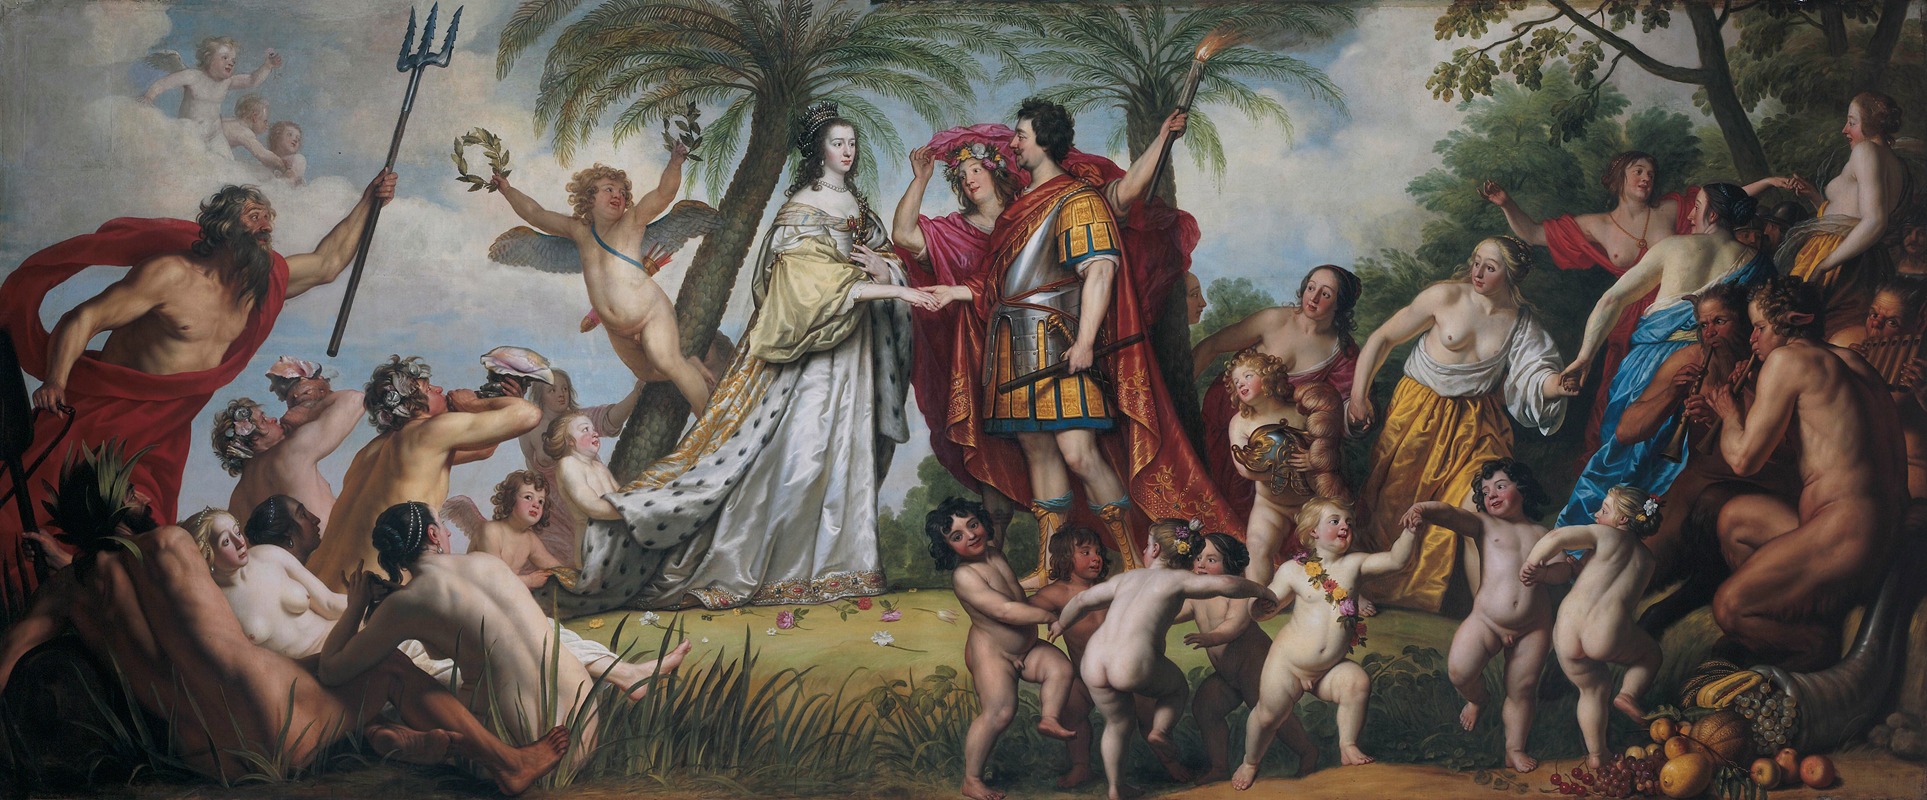 Gerard van Honthorst - The Marriage of Frederik Hendrik and Amalia van Solms